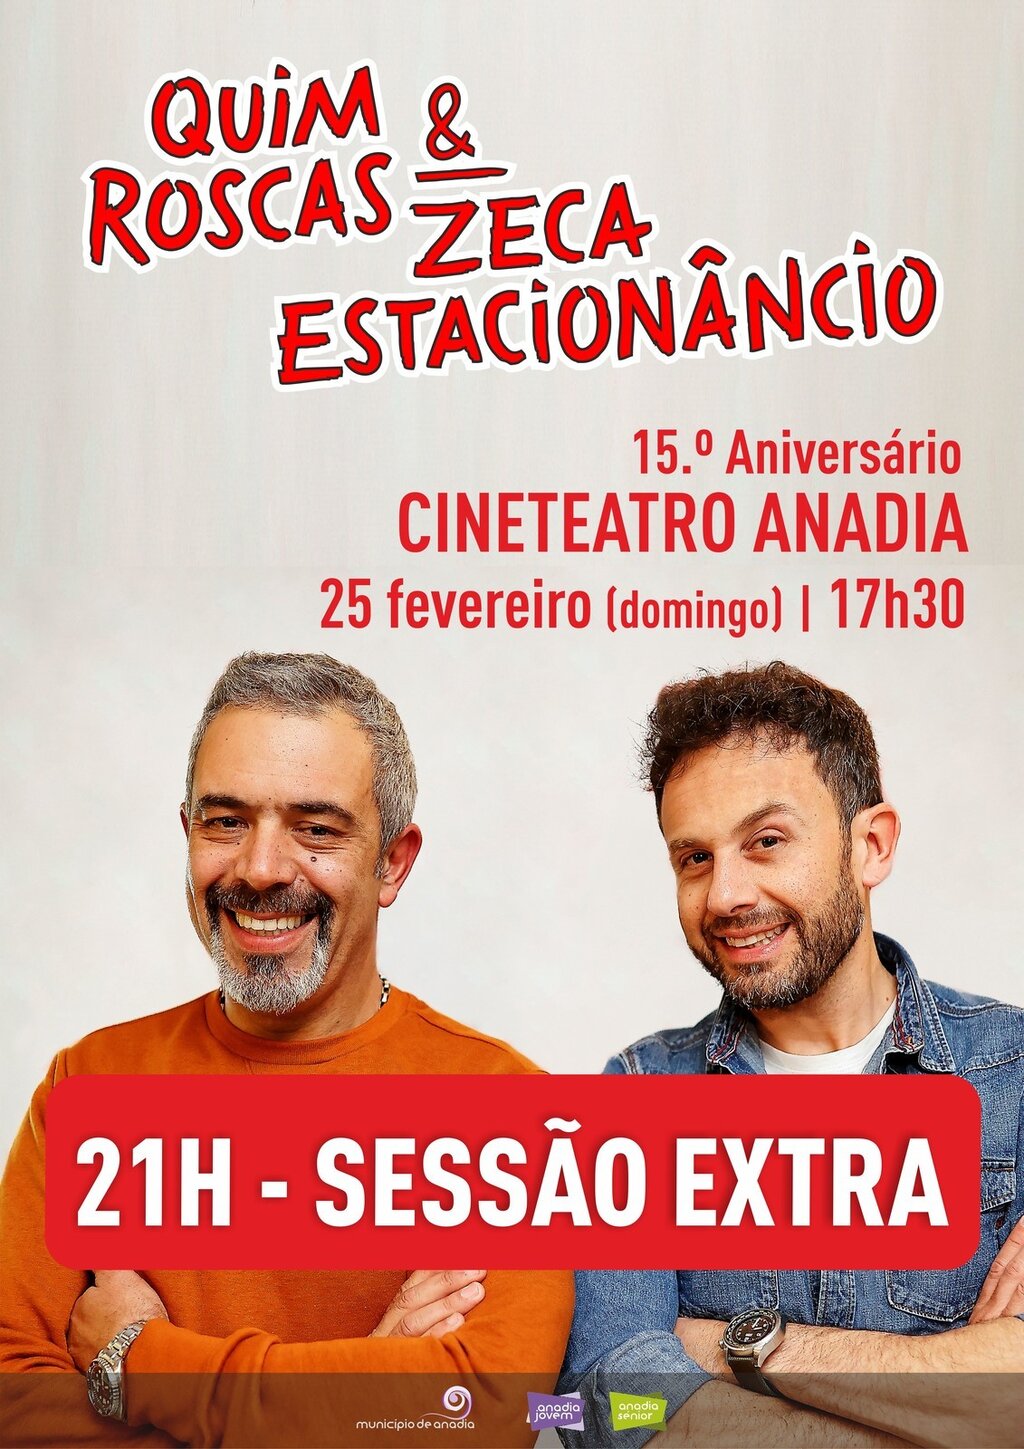 Quim Roscas & Zeca Estacionâncio - SESSÃO EXTRA - 21H